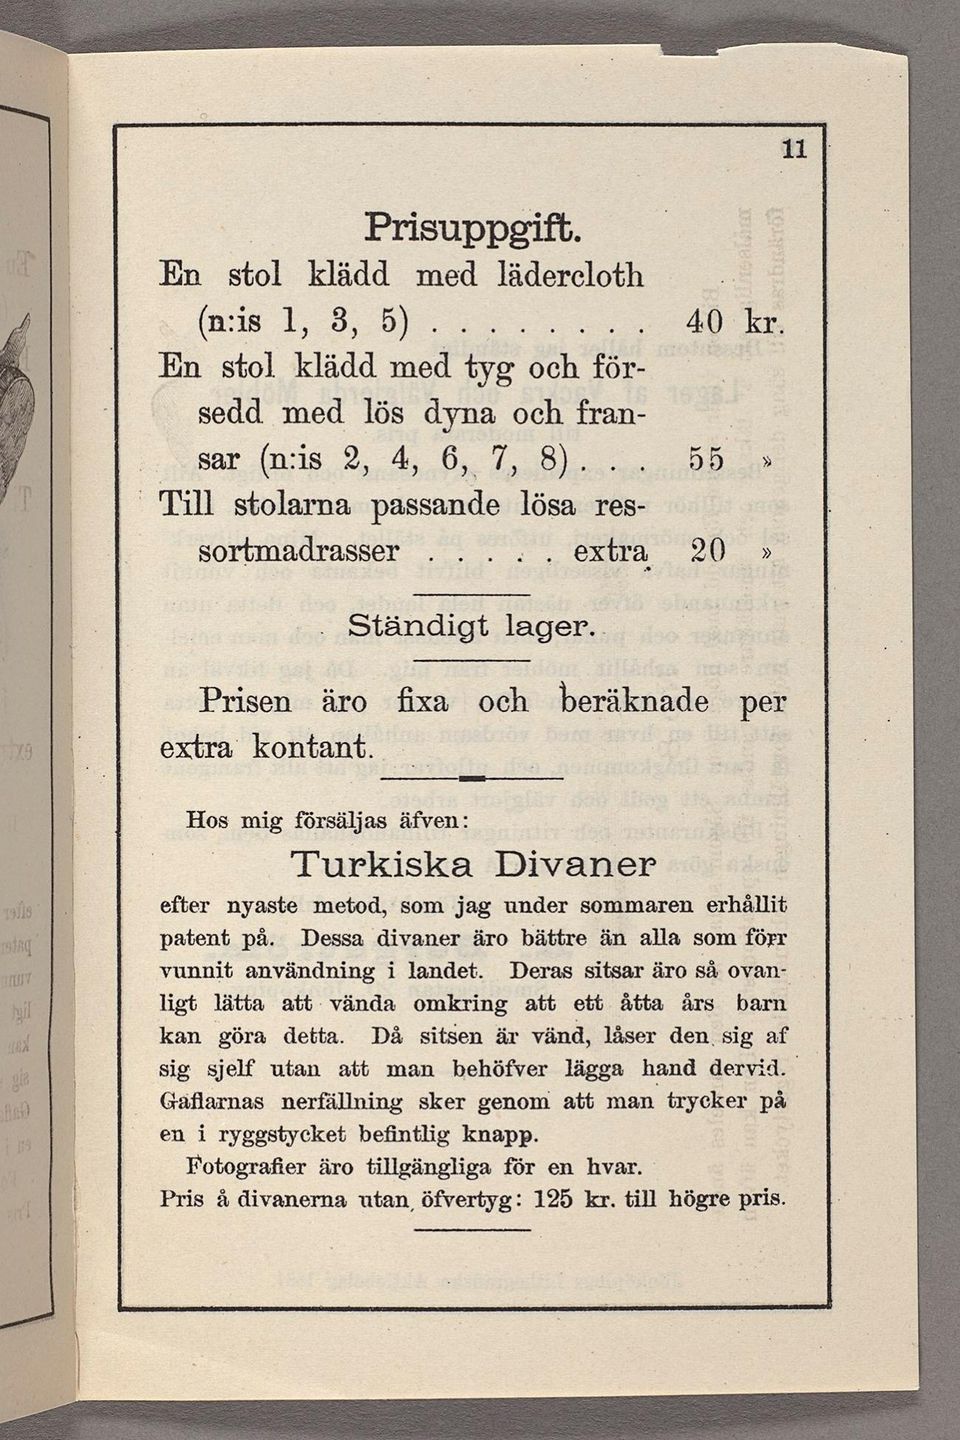 Hos mig försäljas äfven: Turkiska Divaner efter nyaste metod, som jag under sommaren erhållit patent; på. Dessa divaner äro bättre än alla som förr vunnit användning i landet.